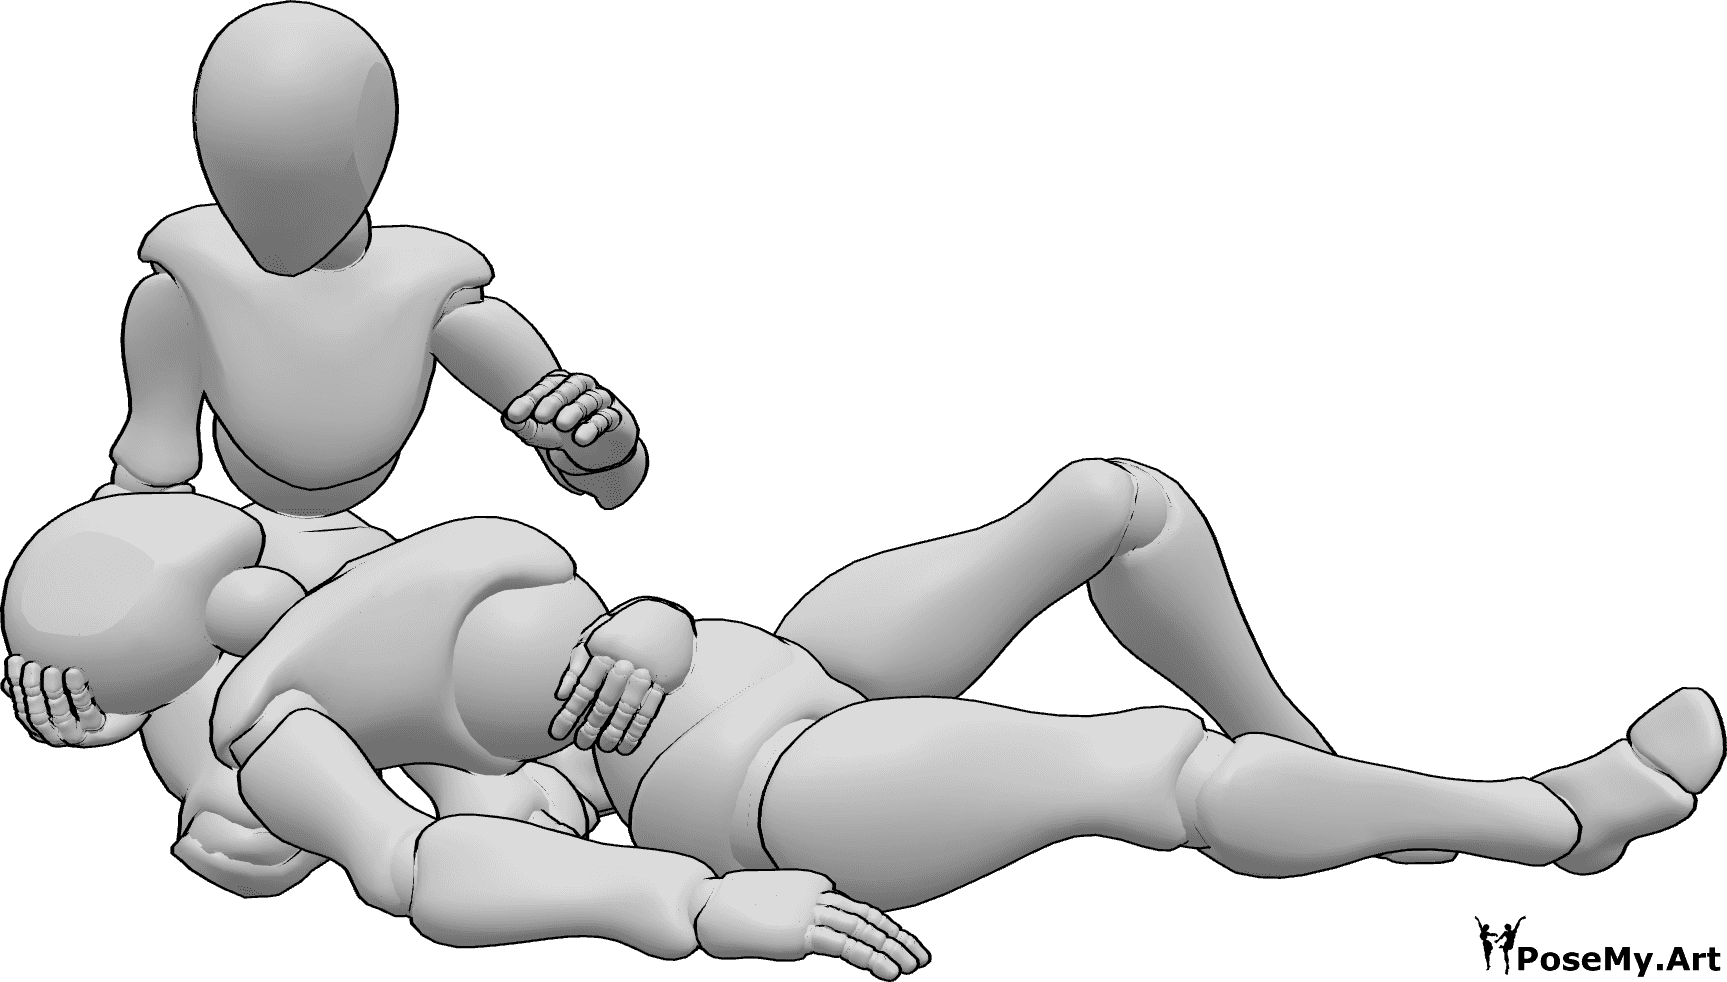 Referência de poses- Mulher ferida em pose deitada - A fêmea ferida está deitada no colo da outra fêmea, segurando a barriga